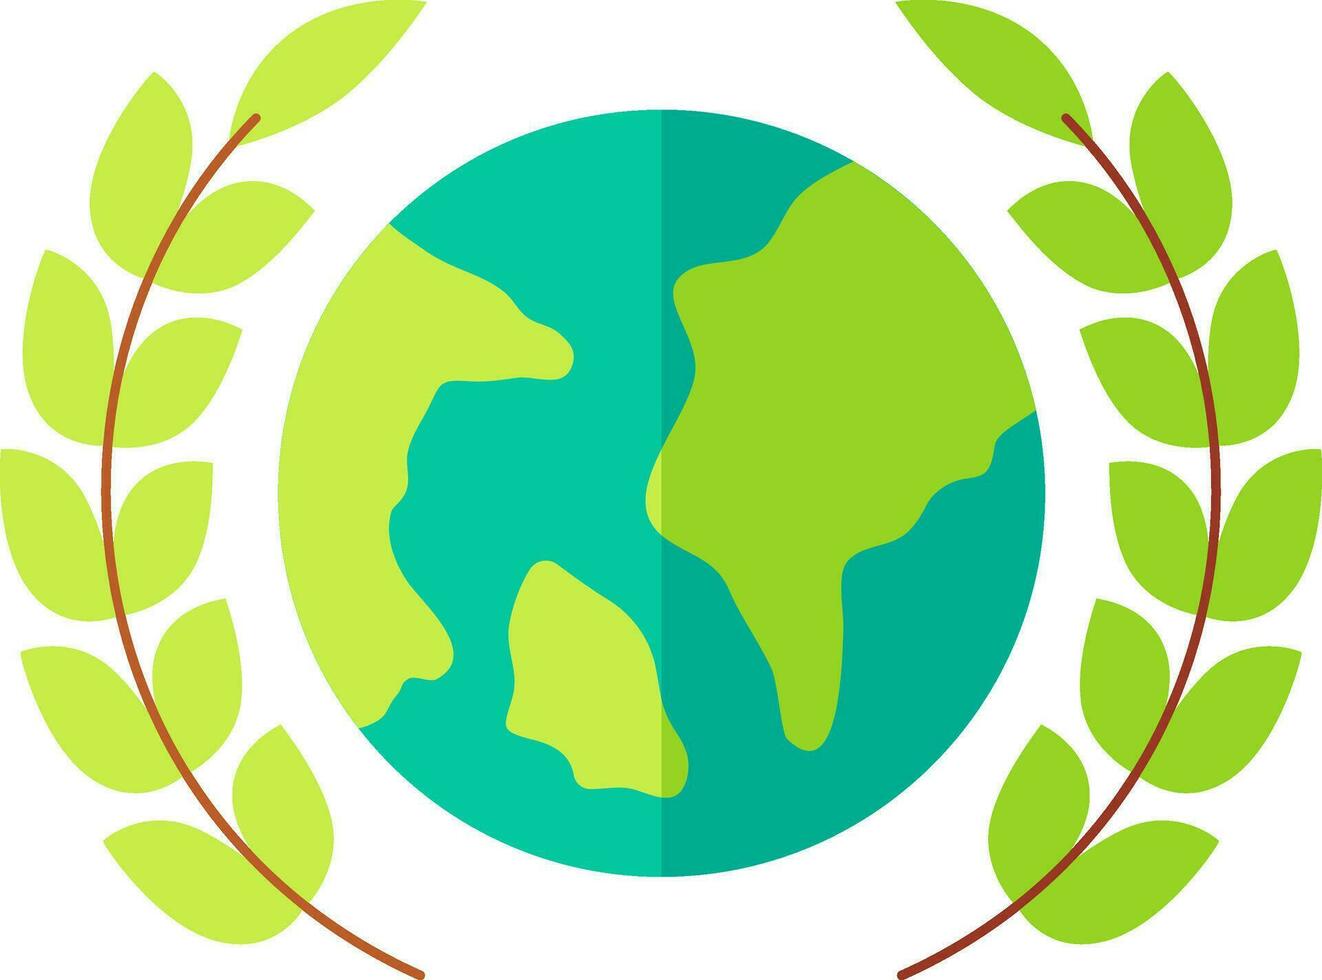 Lorbeer Kranz mit Erde Globus Symbol im Grün Farbe. vektor